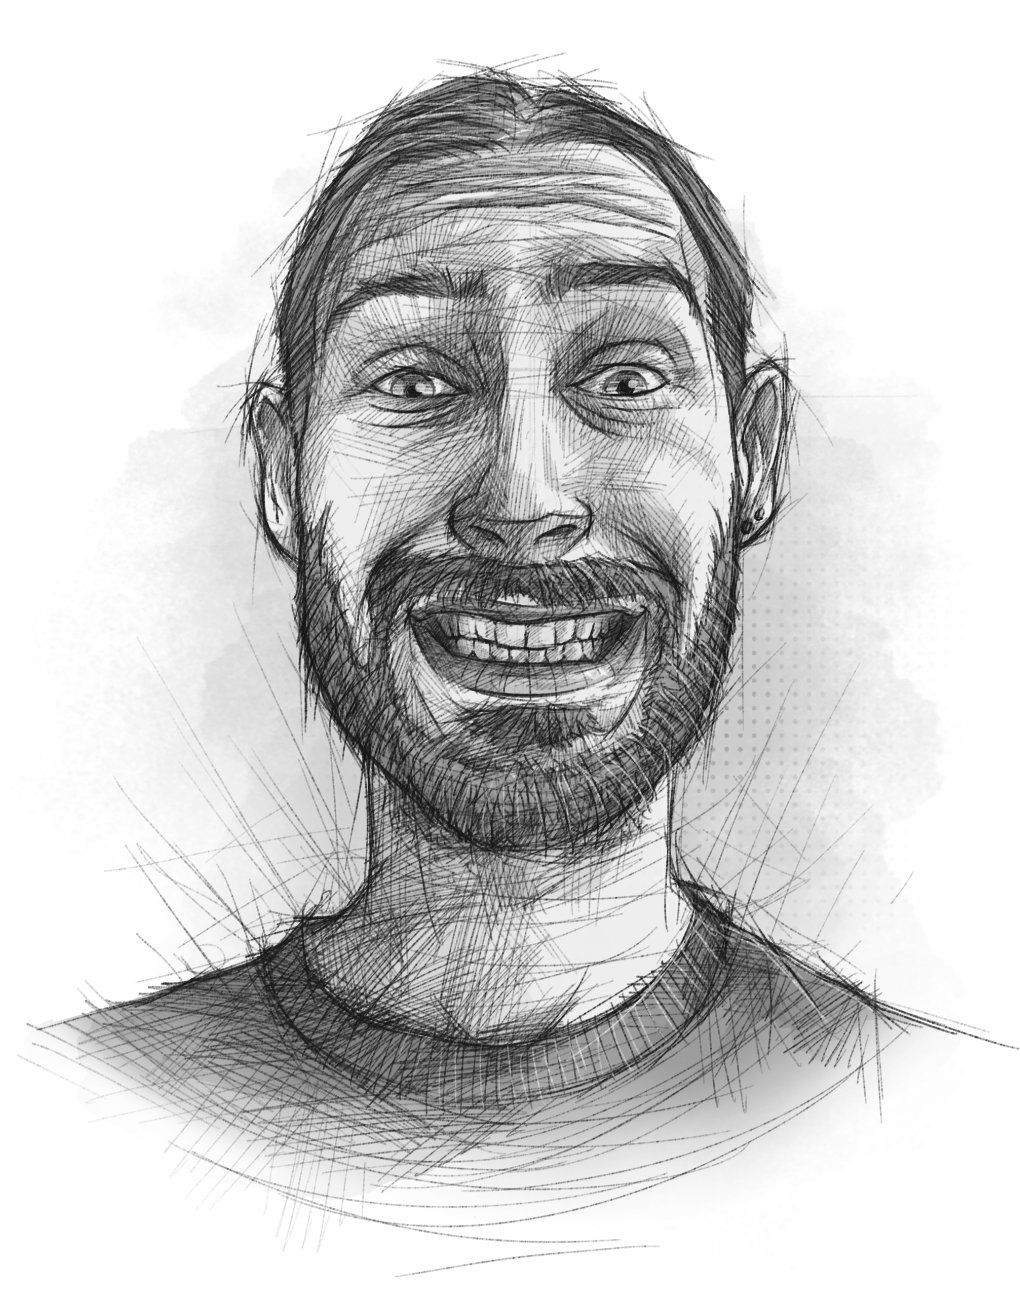 Ein skizzenhaft illustriertes Selbstportrait, das den Illustrator mit Grimasse mit einem leichten Lachen zeigt